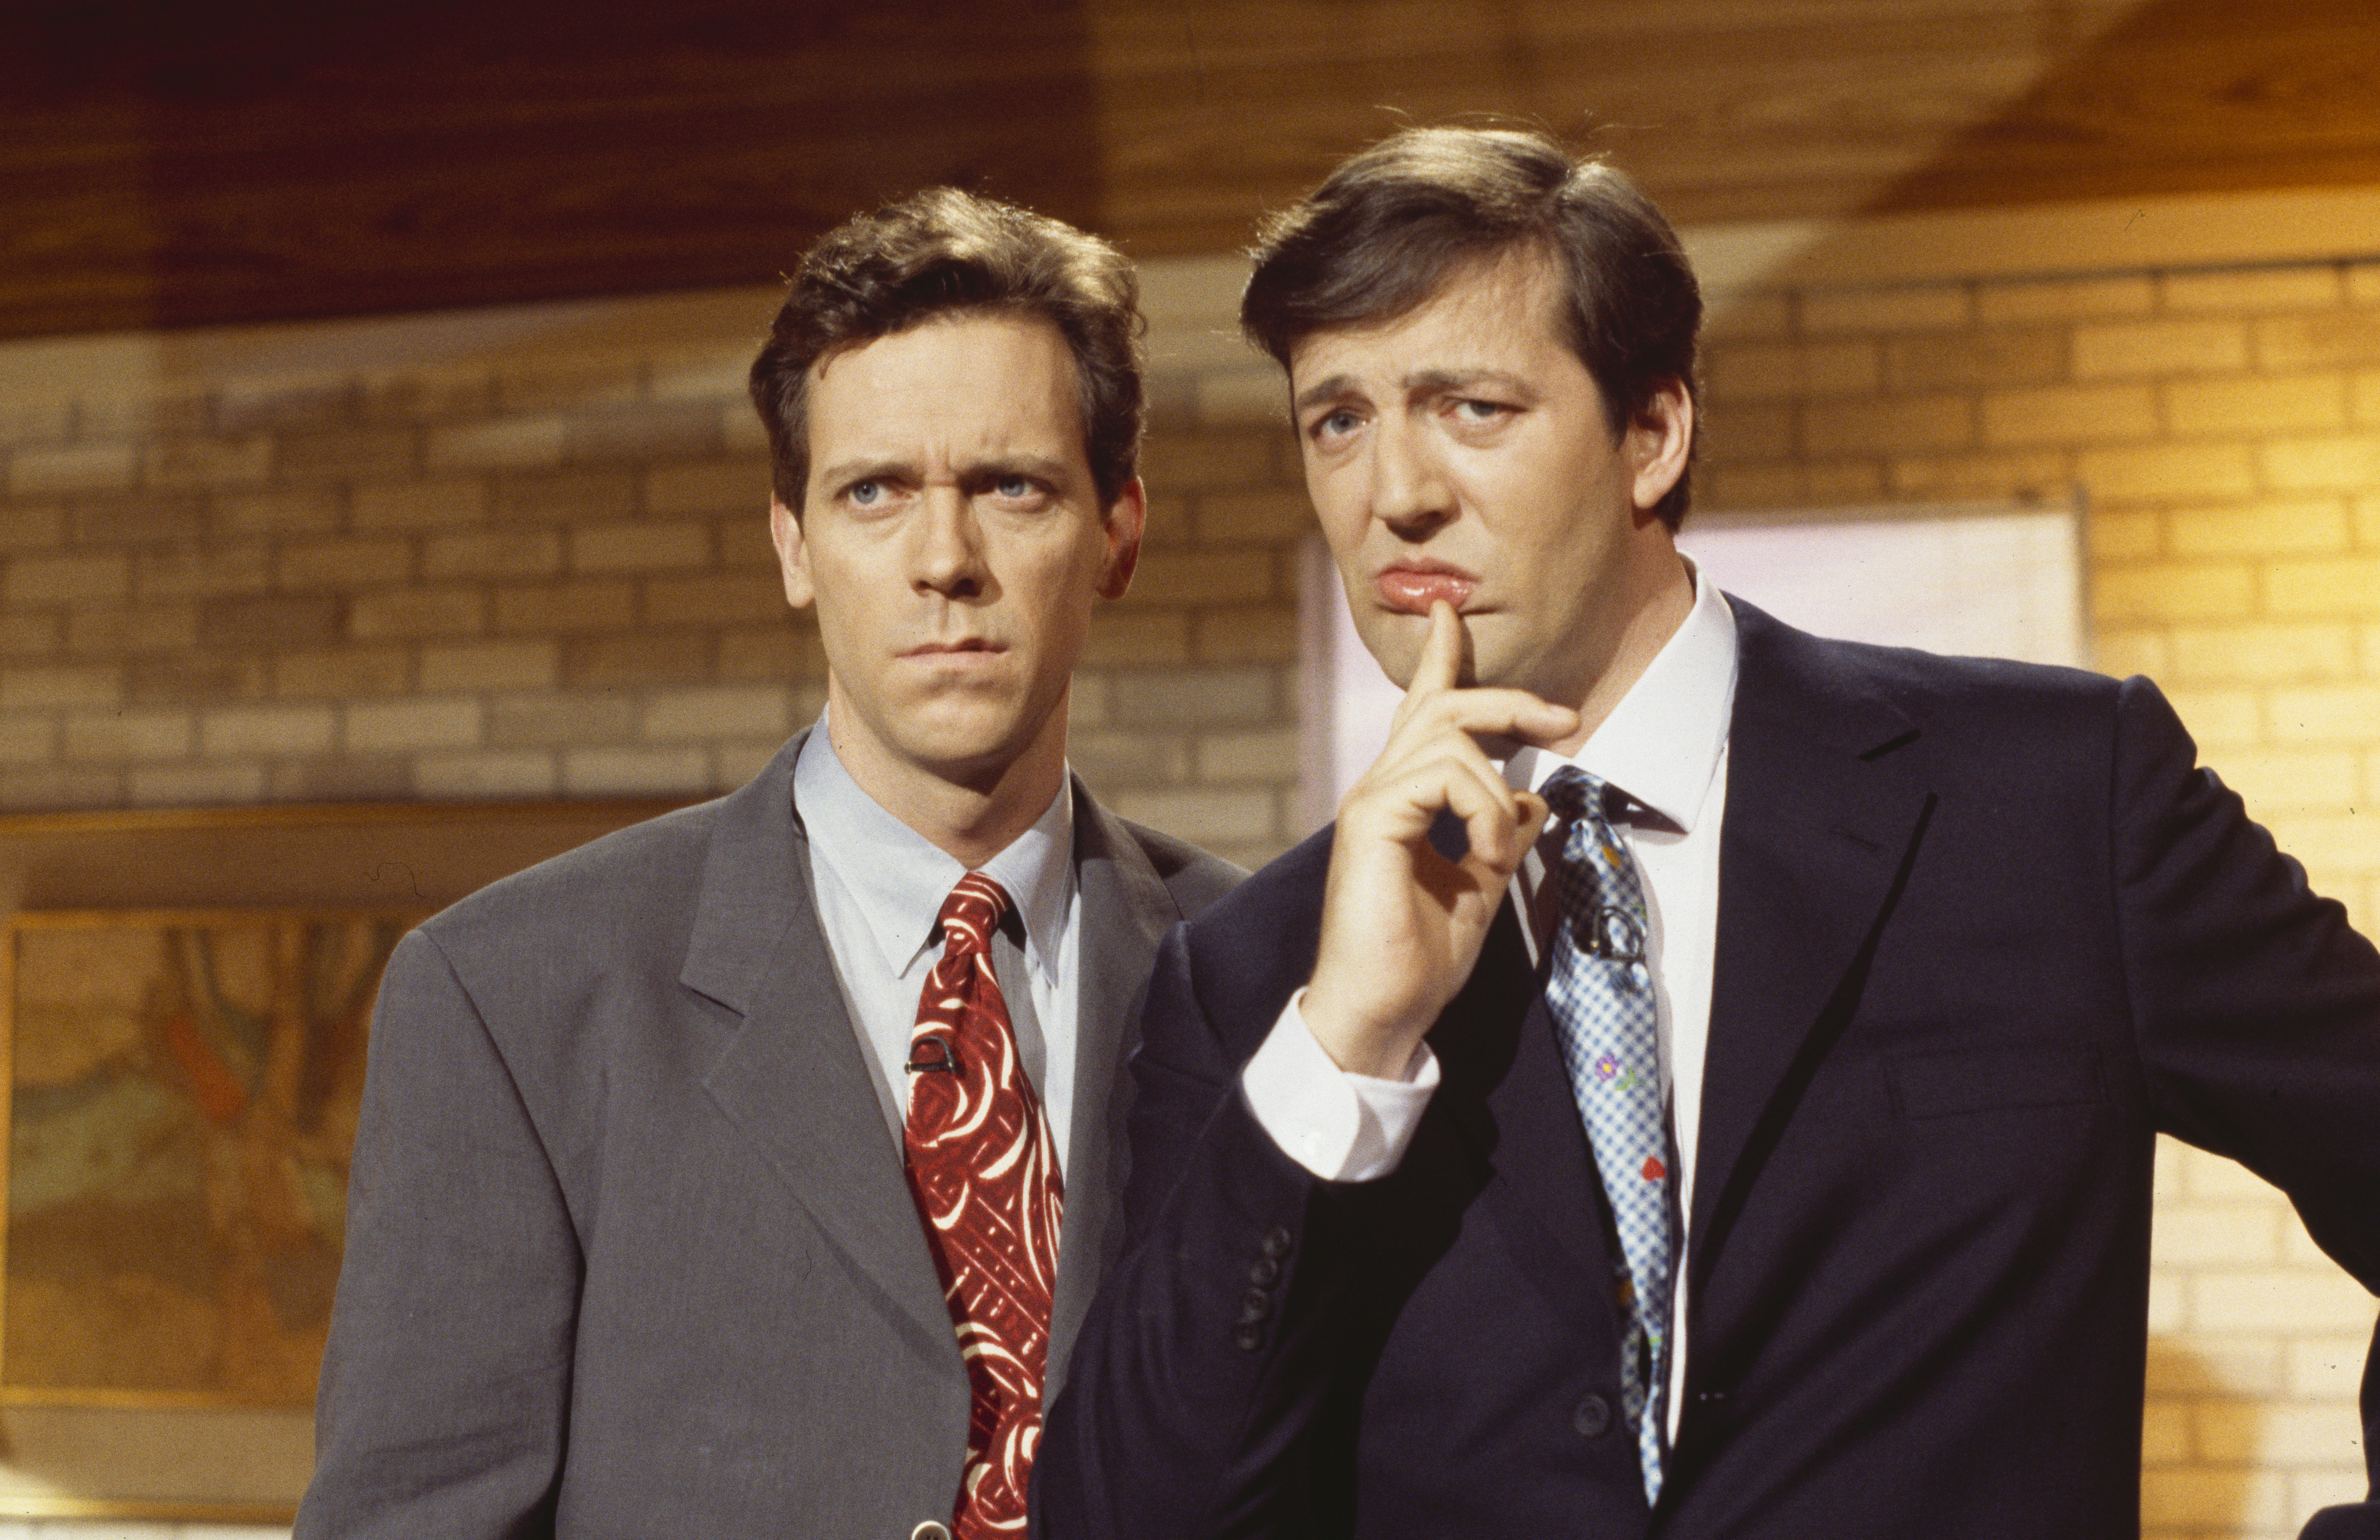 Hugh Laurie et Stephen Fry dans un sketch de la série télévisée de la BBC "A Bit of Fry and Laurie" le 29 mars 1994. | Source : Getty Images